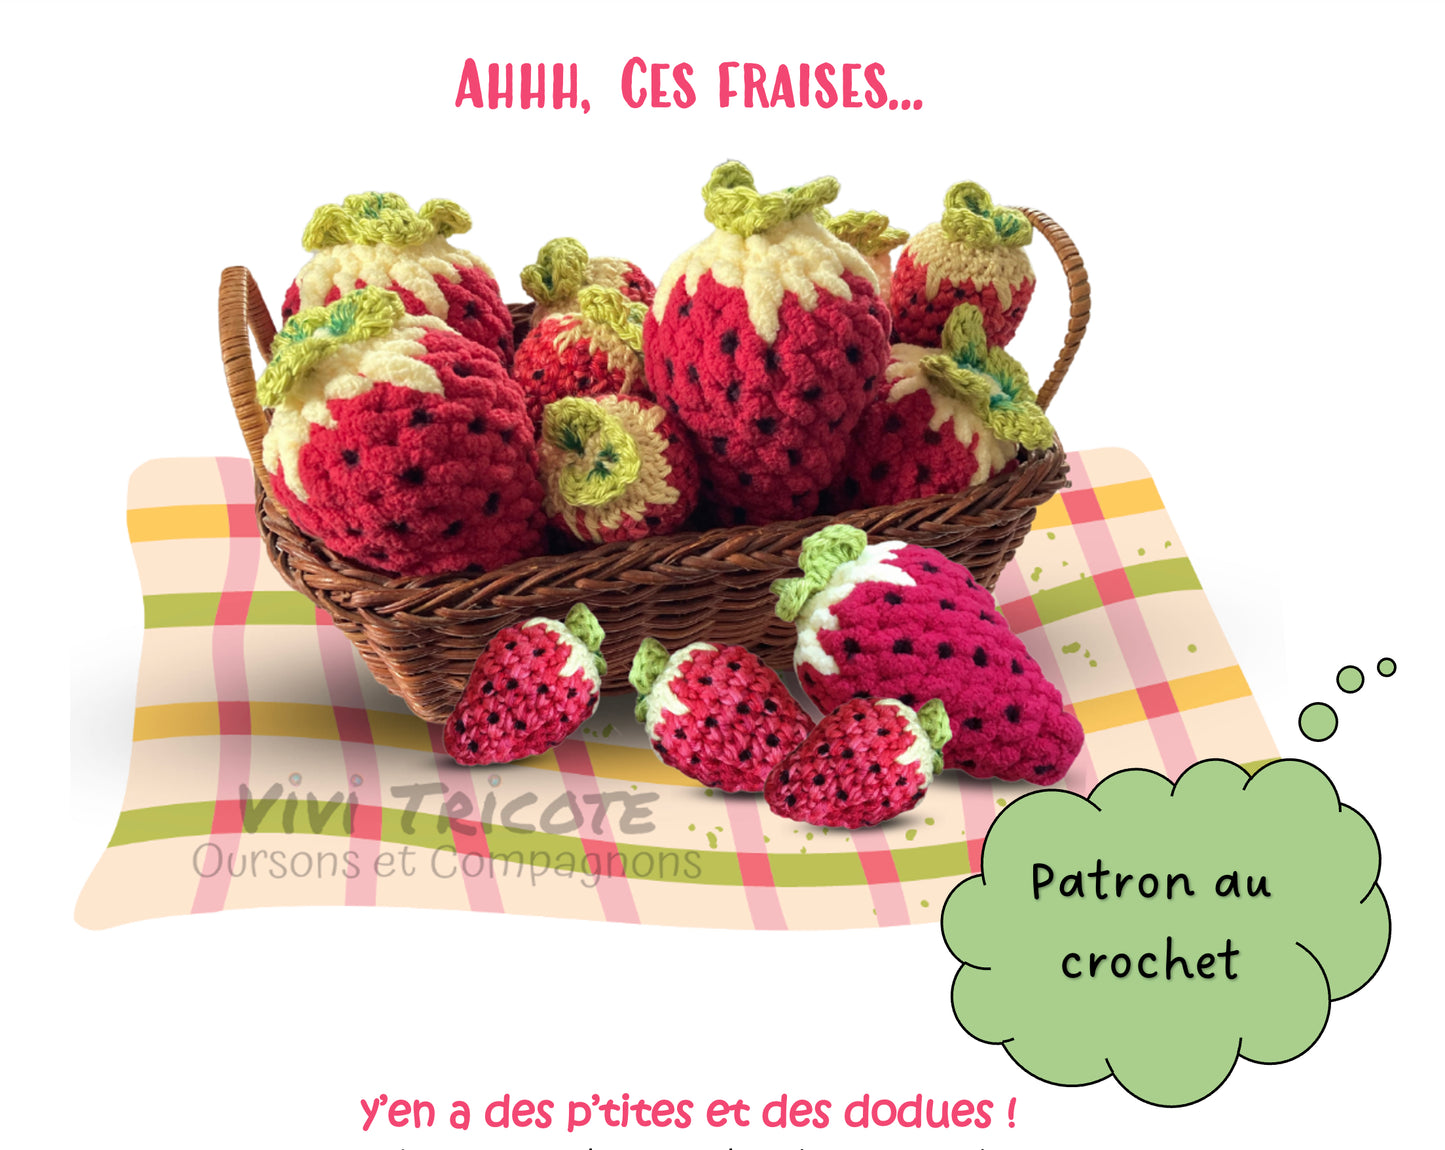 AHHH, CES FRAISES! -  PATRON AU CROCHET à télécharger, PDF Français ou anglais